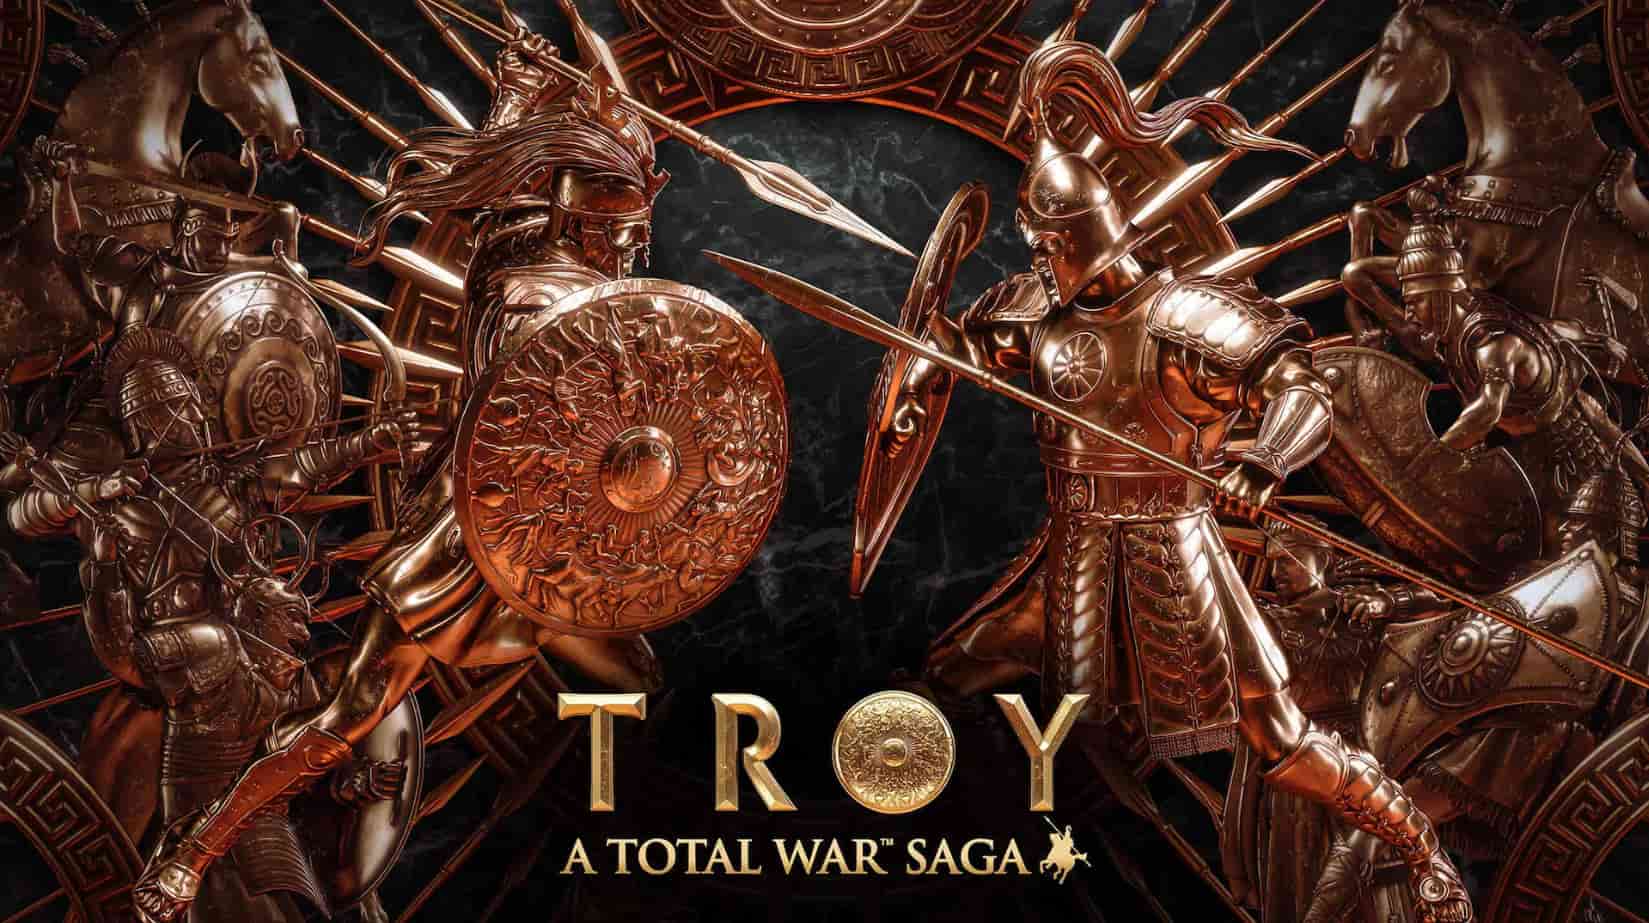 A Total War Saga: Troy gratis in 24 ore dal lancio